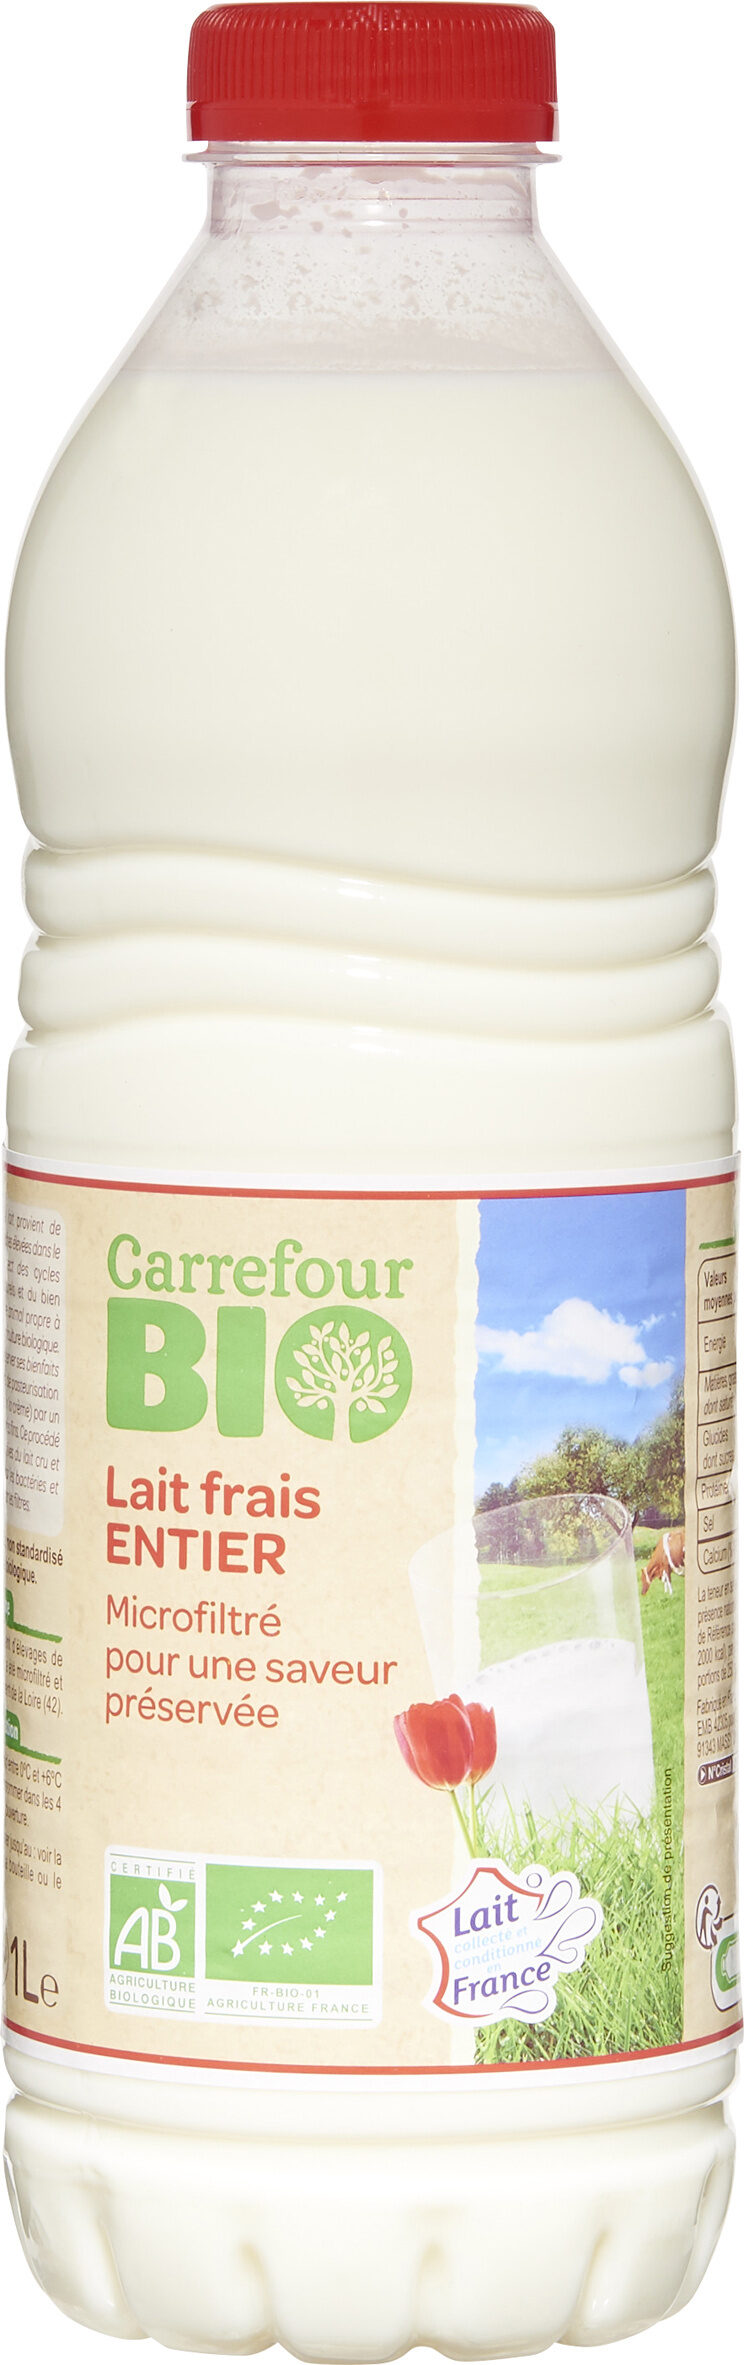 Lait frais entier - Carrefour Bio - 1 L